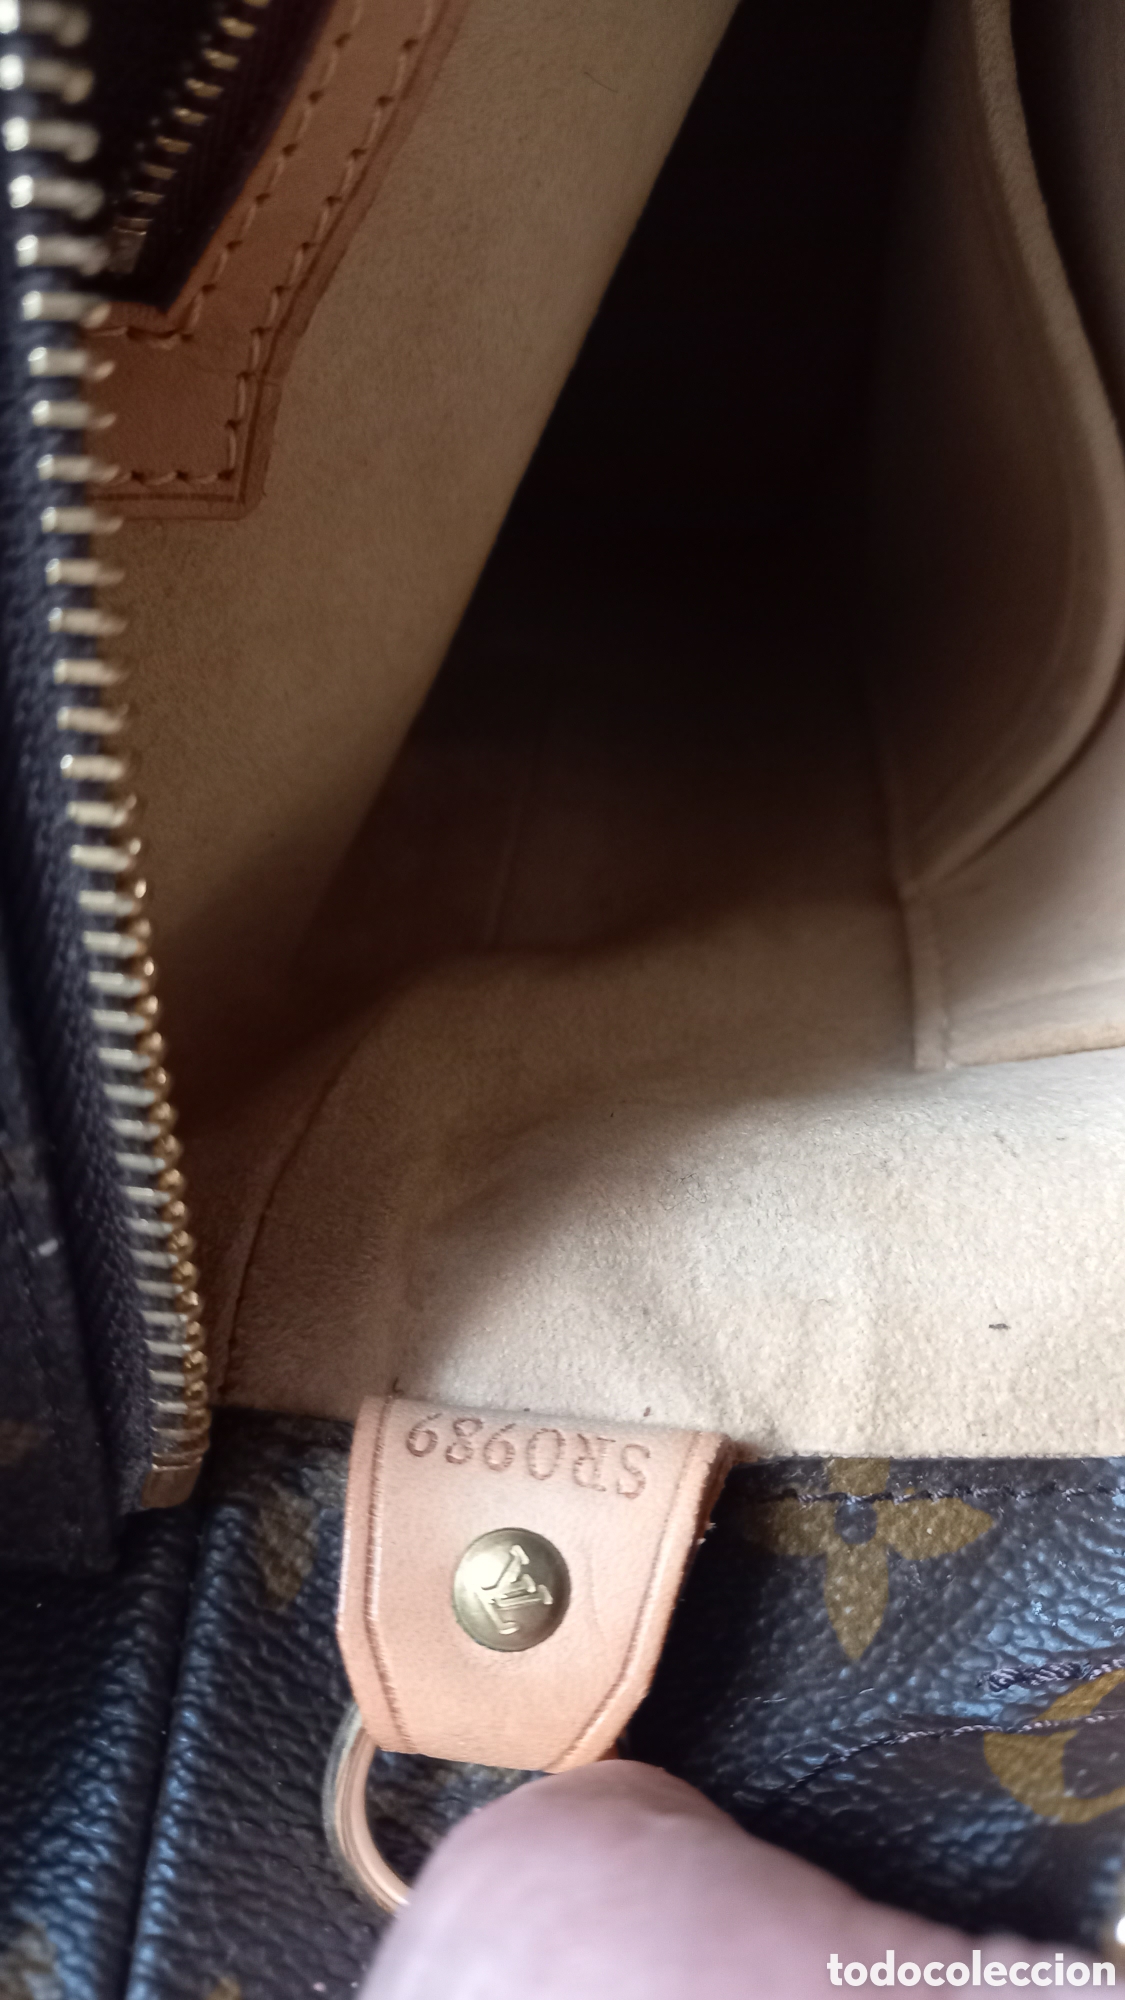 louis vuitton bolso autentico original ar1912 - Compra venta en  todocoleccion